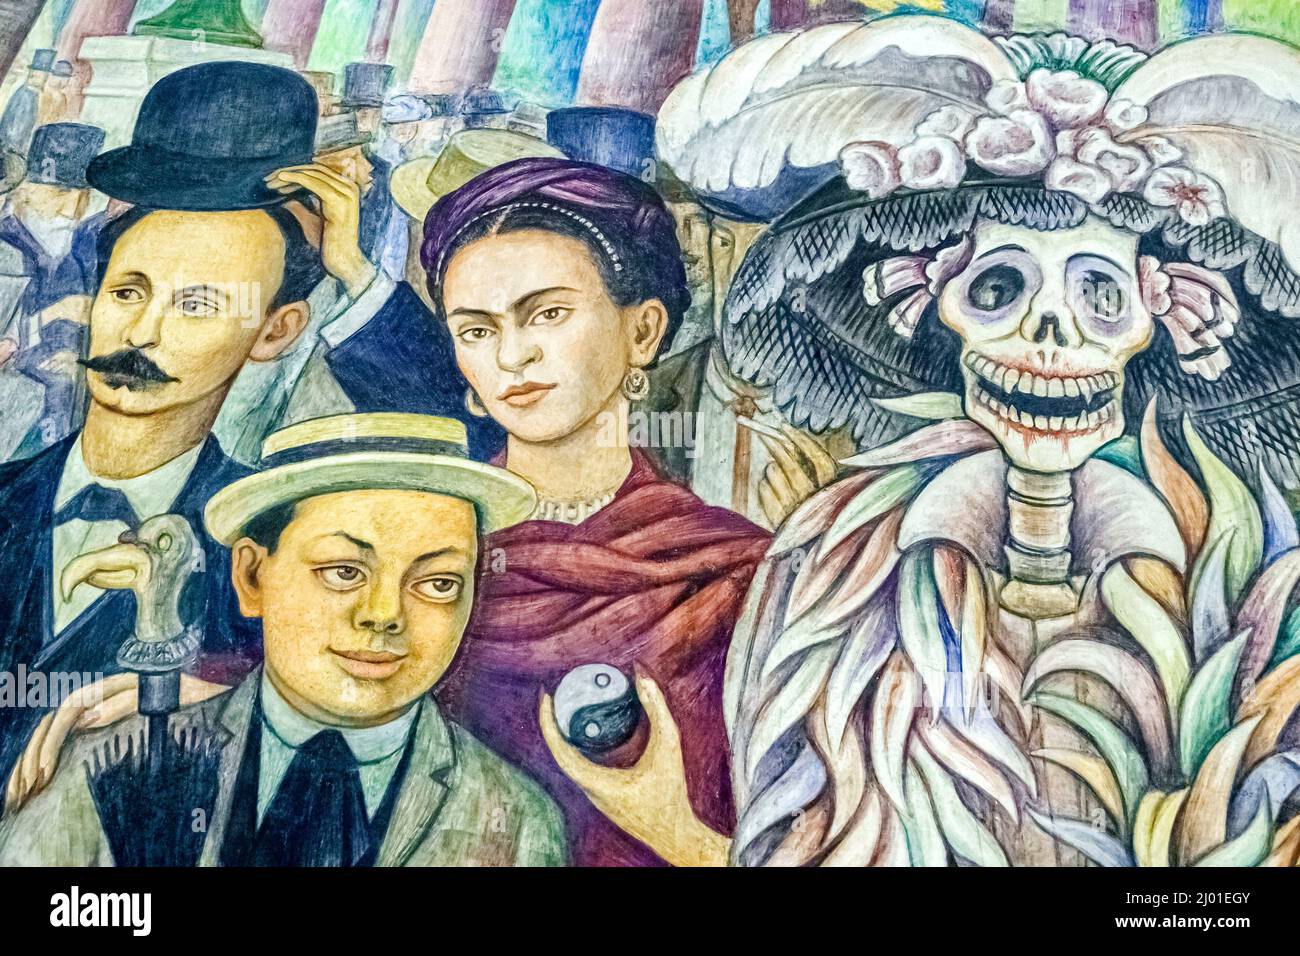 Ciudad de México, Museo Mural Museo de Arte Diego Rivera, Sueno de una tarde dominical en la Alameda Central 1947, esqueleto de catrina José Martí Frida Kahlo Foto de stock